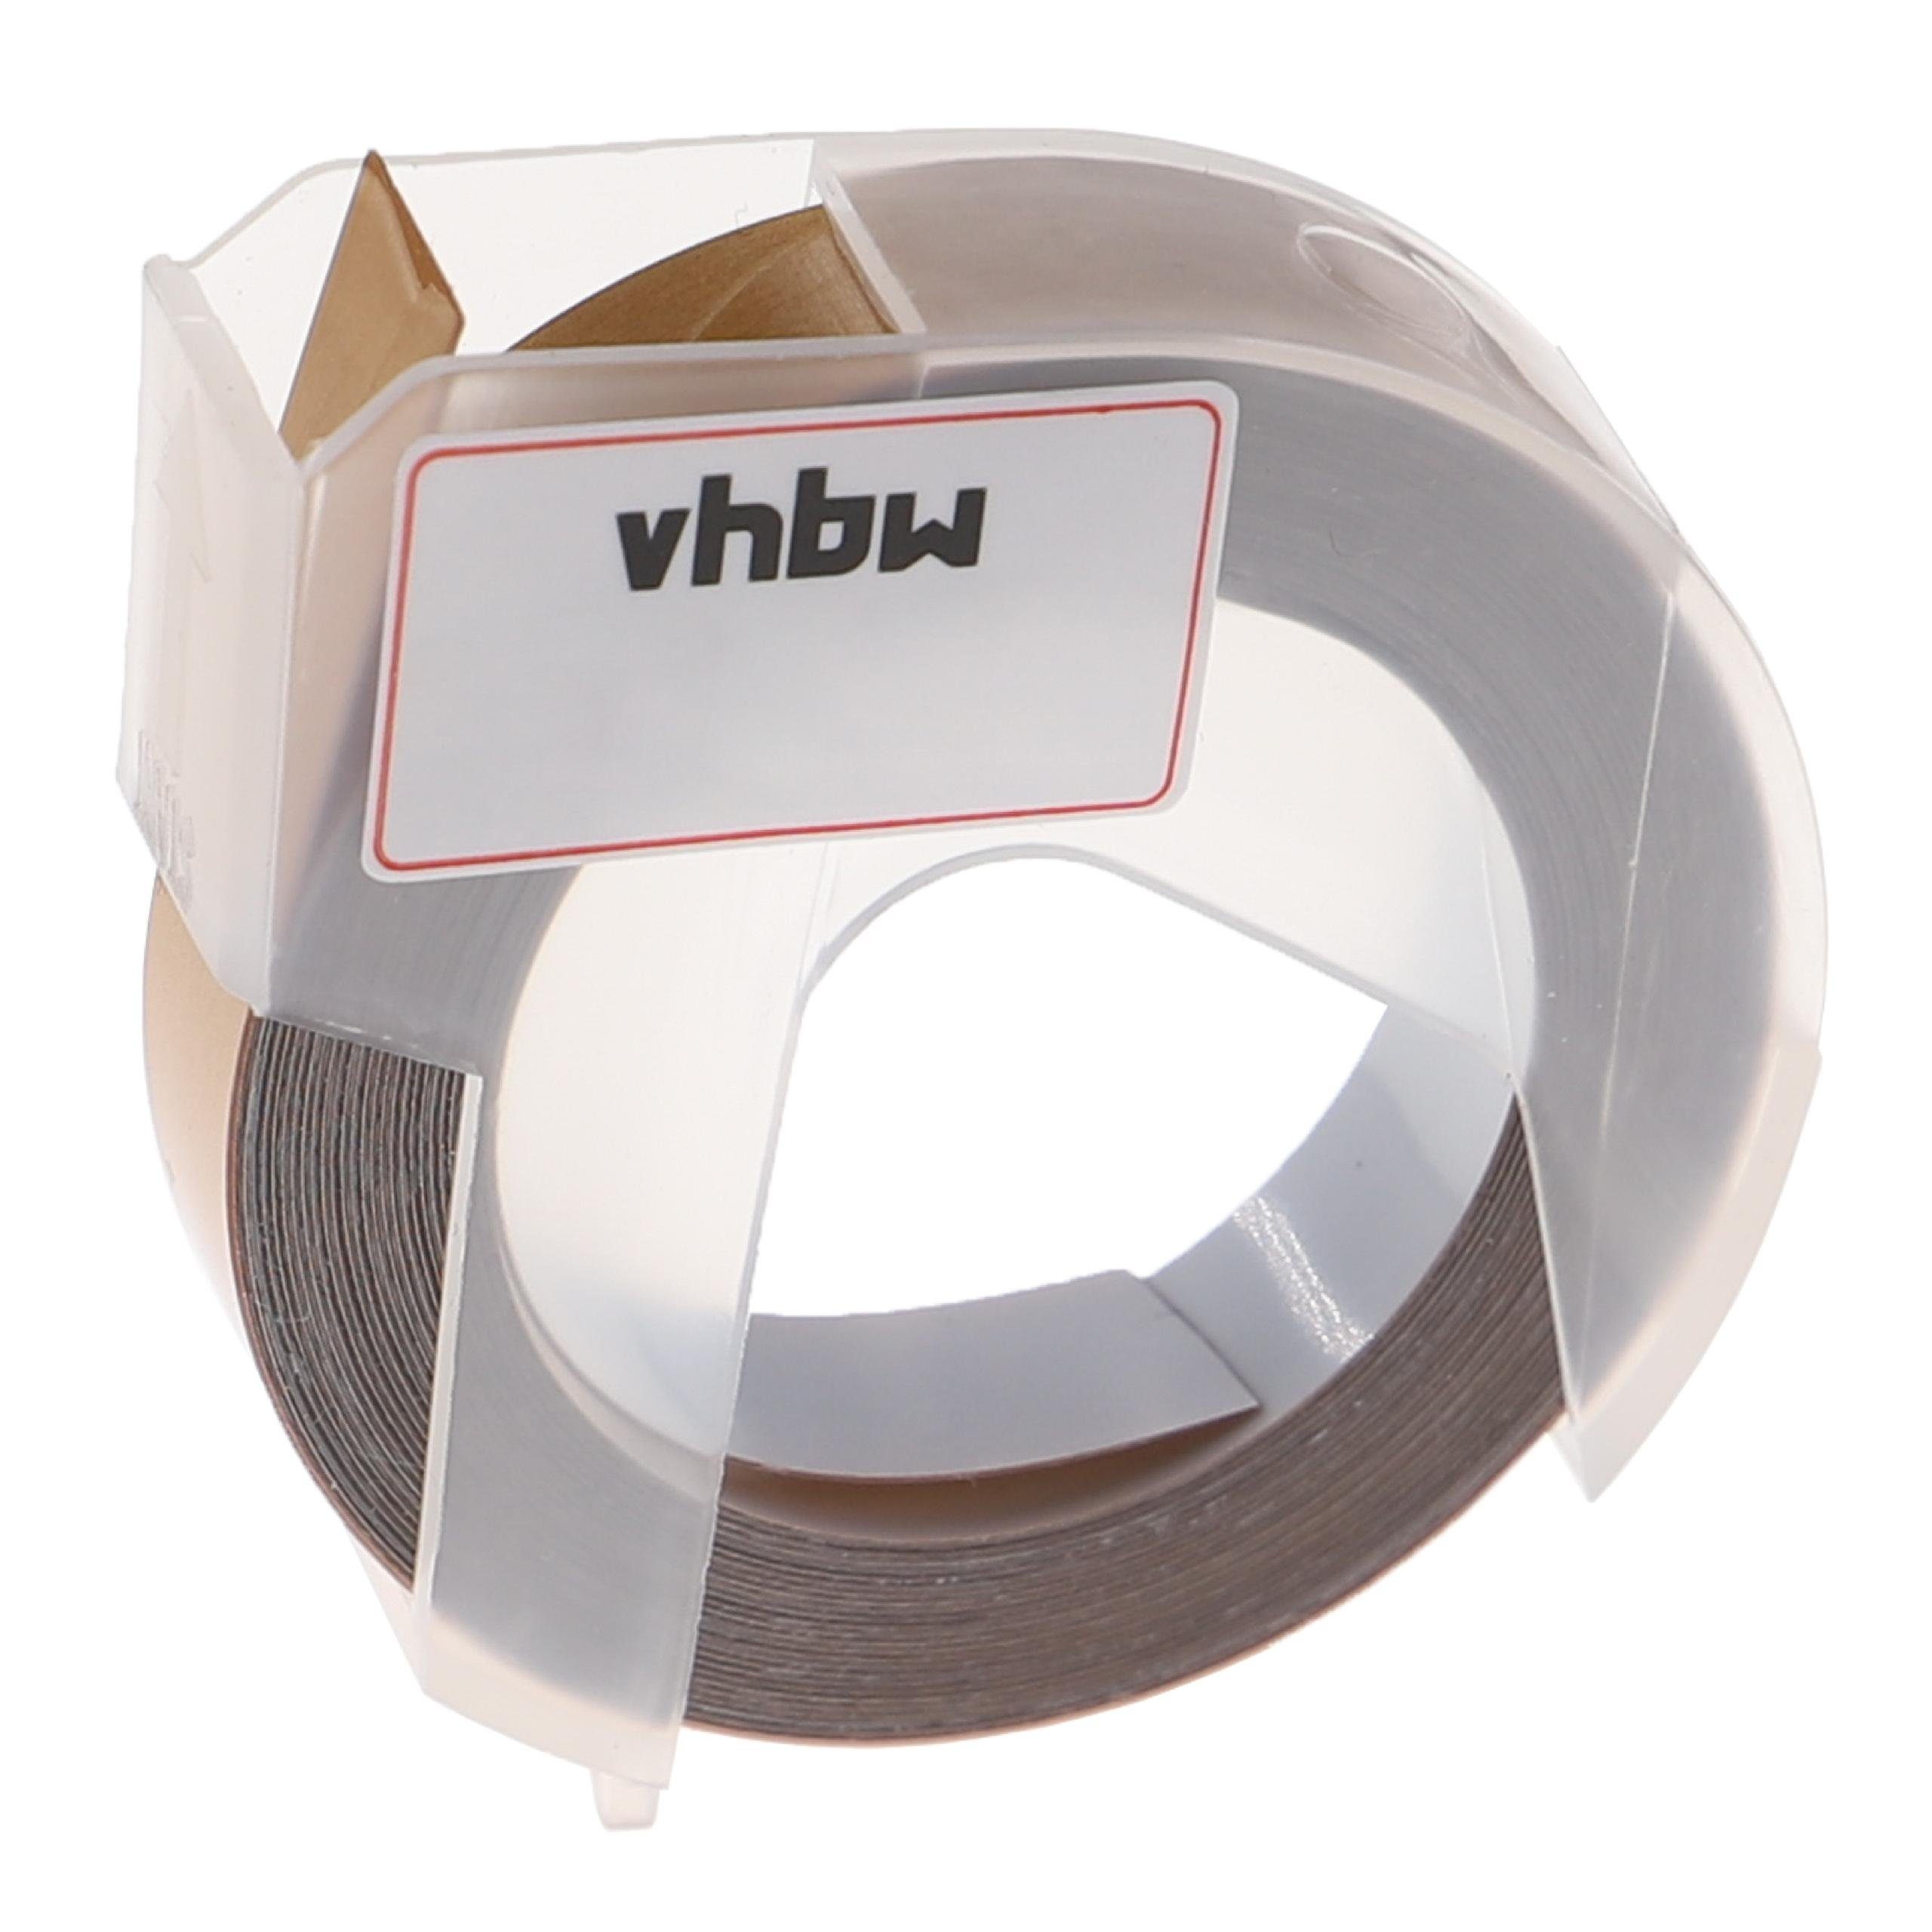 vhbw Beschriftungsband passend für Motex 5500A, 5500B Beschriftungsgerät / Drucker & Kopierer